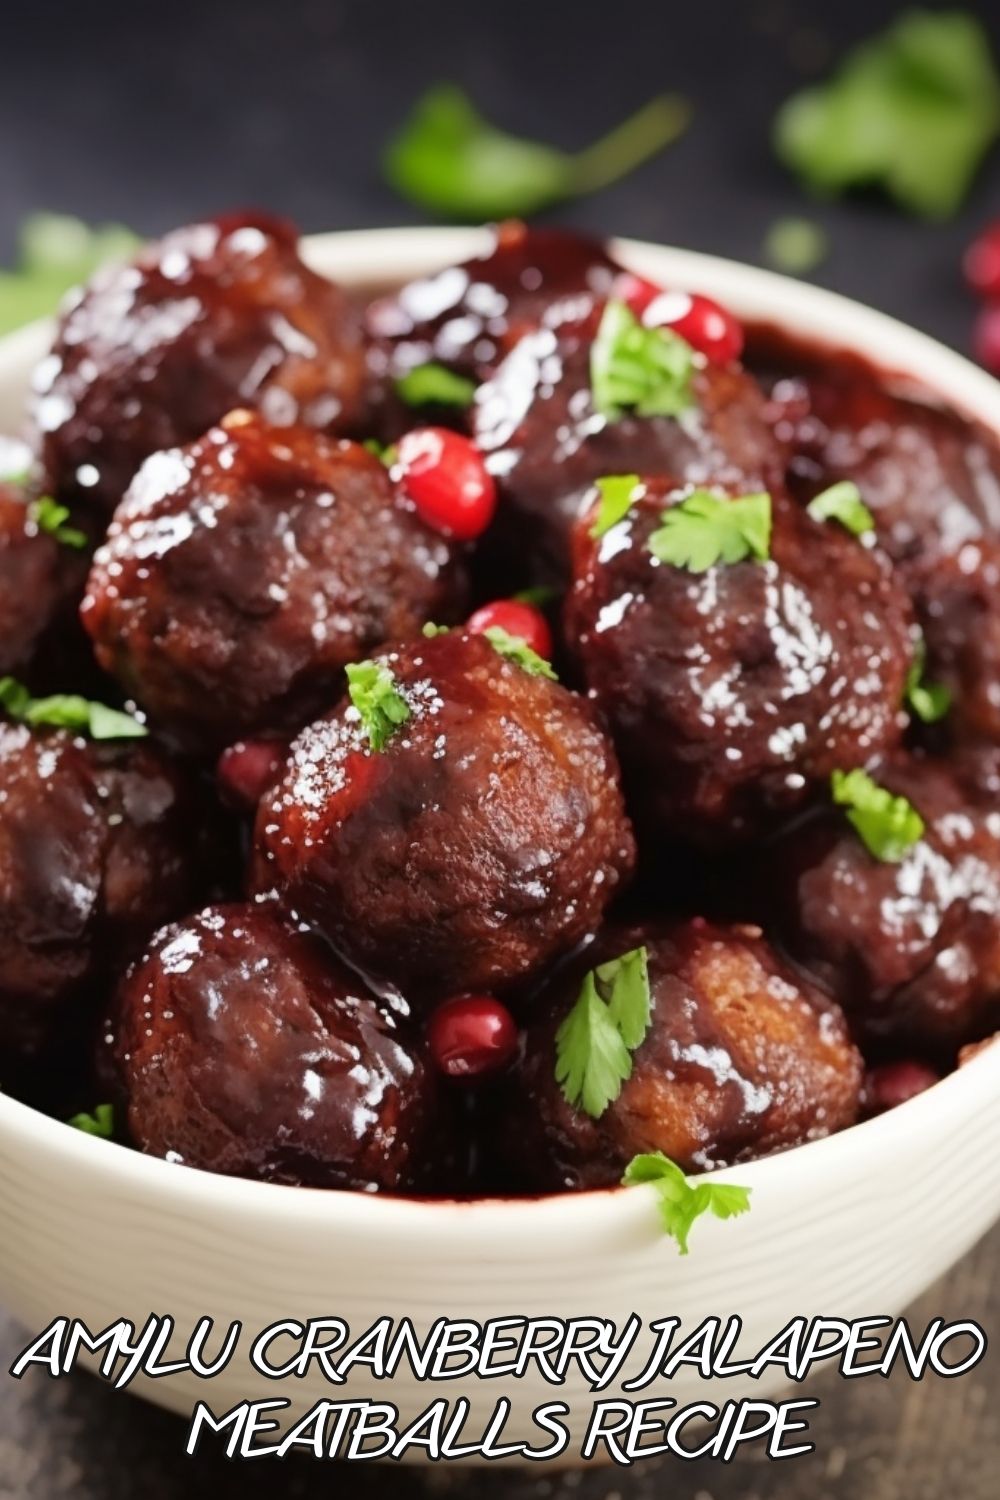 Amylu Cranberry Jalapeno Meatballs Recipe